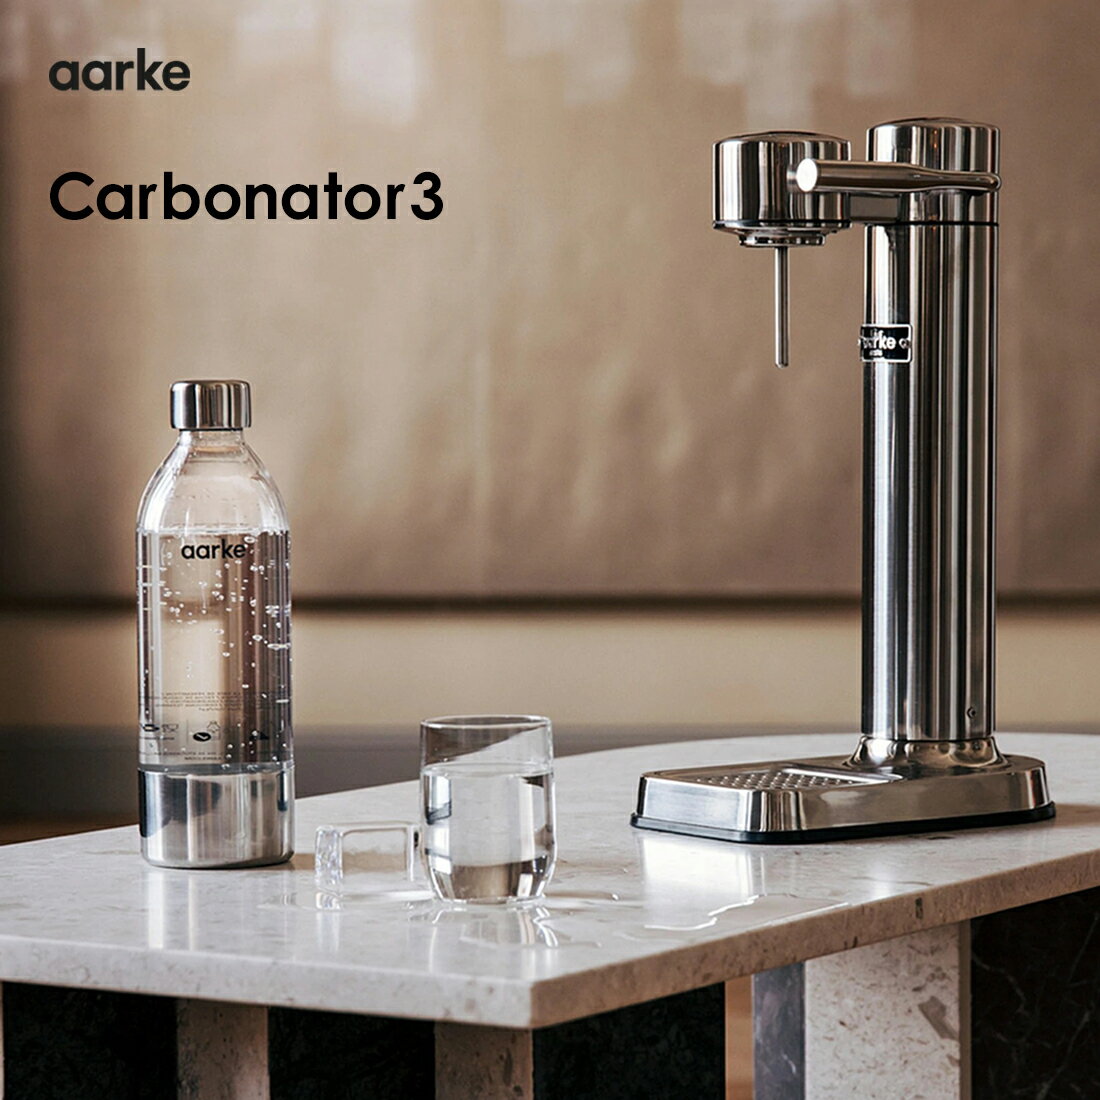 【aarke/アールケ】Carbonator 3/カーボネーター3/専用ペットボトル付き Designed by Jonas Groth / Carl Ljungh サスティナブルで美しい、北欧デザインのソーダマシン。 いつでも簡単に、お好みの強さの炭酸水を作ることができます。 カーボネーターの使い方はとてもシンプル。 本体に炭酸ガスシリンダー（要別途購入）と付属の専用ボトルに清潔な冷水をセットして、 あとはレバーを下げるだけで、細やかな泡の美味しい炭酸水が作れます。 炭酸量の調整はレバーで簡単に調節でき、お好みにあった強さのソーダが出来上がります。 ※ご注意ください※ 炭酸ガスシリンダーは、本体と別に購入が必要です。 ソーダストリーム社等の410g/60Lのスタンダードタイプがご使用になれます。 −−−−−−−−−−−−−−−−−−−−−−−−−−−−−−−−−− aarke(アールケ)・・・ 大量生産の効率化によるデザイン・コミュニティにより、 忘れかけてきたハイエンド・プロダクトの「美しさ」を取り戻すため、 インダストリアル・デザイナーのJonas GrothとCarl Ljunghの 2人により2016年に設立されました。 ソーダーサーバー・マシーンを初めとし、 北欧デザインたるシンプルな美しさを像形した、 高級・高品質製品の生産を目指します。 デザイナー Jonas Groth/Carl Ljungh カラー ブラスゴールド／スチールシルバー／ホワイト／コッパー/マットブラック 本体サイズ 本体：高さ41.4cm　幅15.3cm　深さ25.8cm　重量1.45kg ペットボトル：高さ26.5cm　直径8.5cm　量0.8 素材 本体：ステンレス／塗装仕上げ付属ボトル：ペットボトル/ステンレス圧着 備考 こちらの商品には炭酸ガスシリンダーは付属しておりません。 ソーダストリーム社など互換性の認定されているものを別途ご購入くださいませ。 イメージ写真について イメージ写真には、該当商品以外の撮影小物なども写っておりますが、それらの小物は商品には含まれておりません。お間違いのないよう、ご注意くださいませ。 手工品の場合 商品がハンドメイドの場合、個体差が生じる場合がございますが、いずれも良品です。色や形、2つとないハンドメイドの良さをお楽しみください。